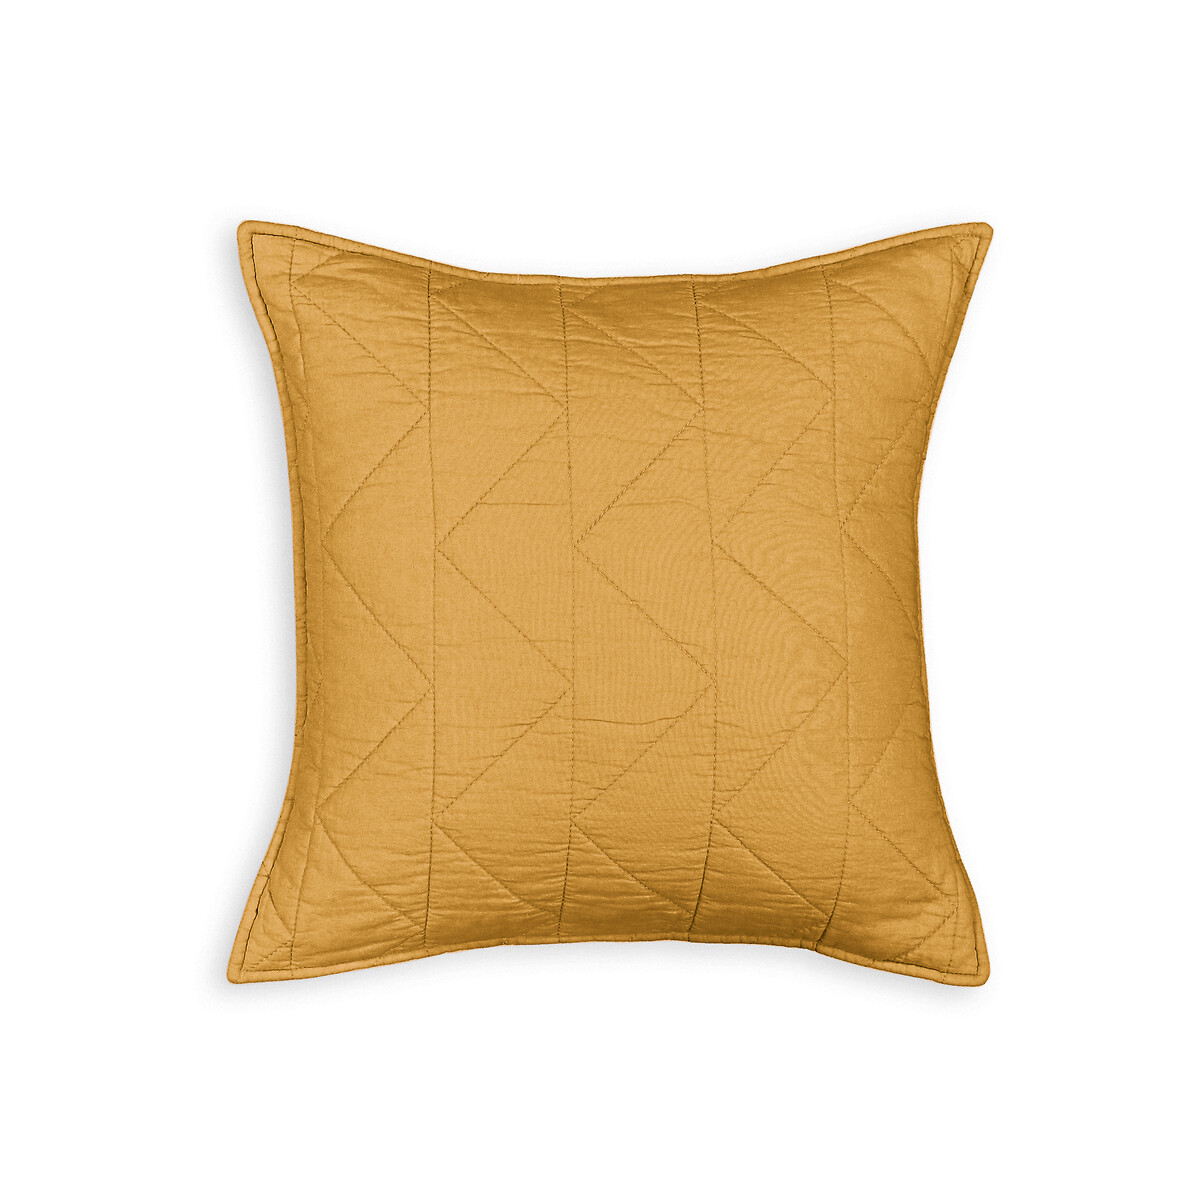 Чехол La Redoute На подушку  наволочка Zig-zag 40 x 40 см желтый, размер 40 x 40 см - фото 3